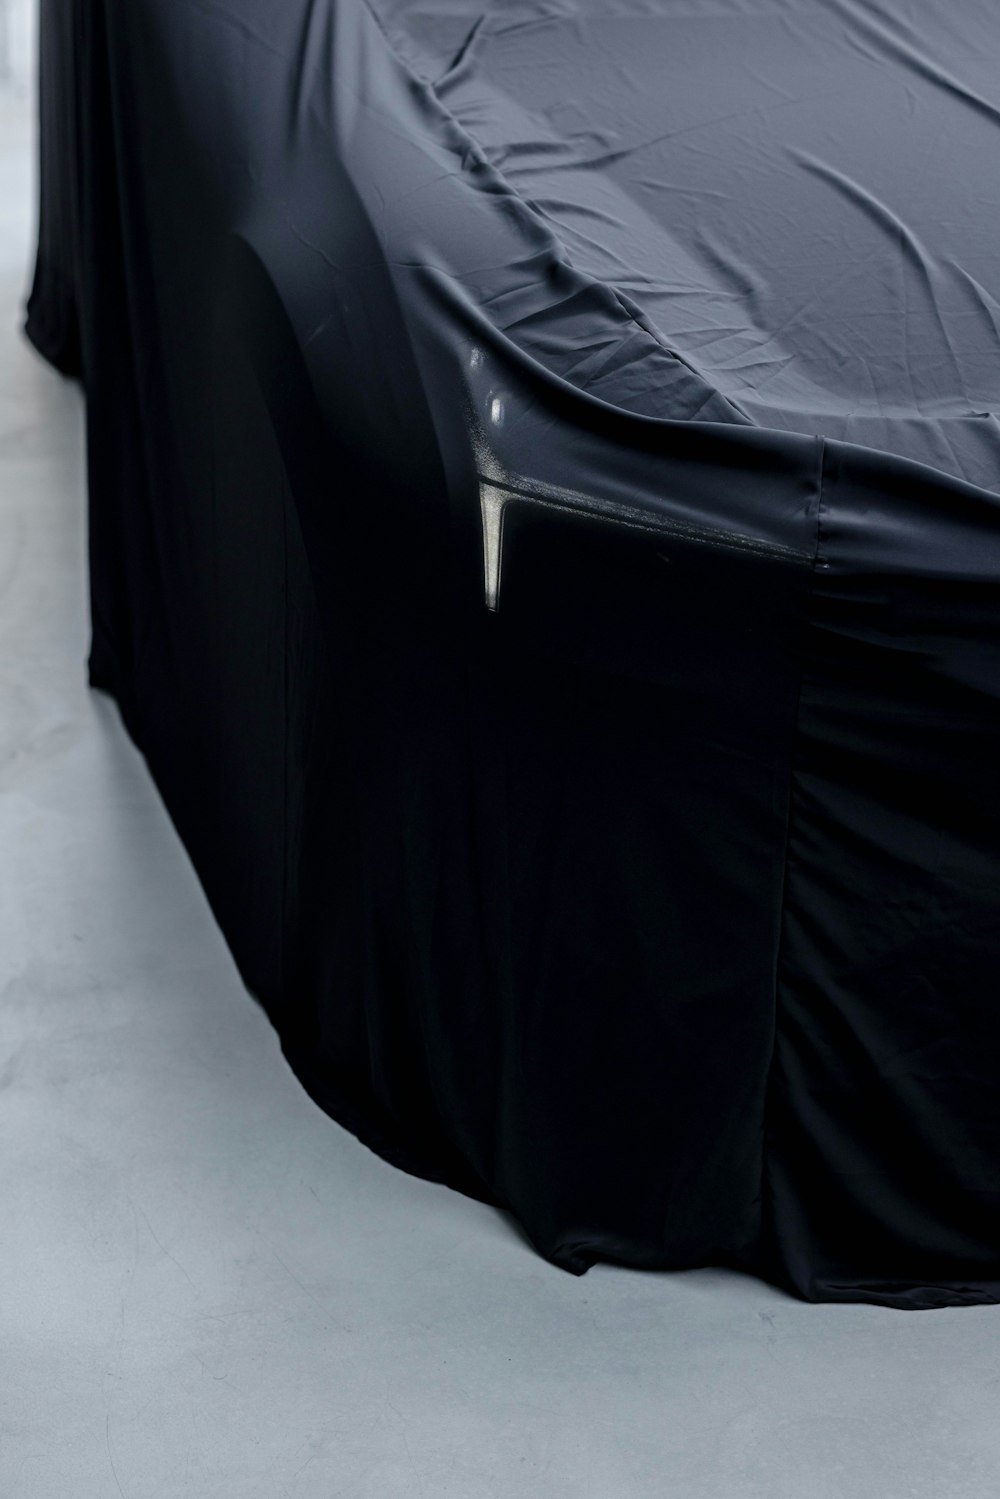 Ein Auto, das mit einer schwarzen Abdeckung bedeckt ist und auf einem weißen Boden sitzt